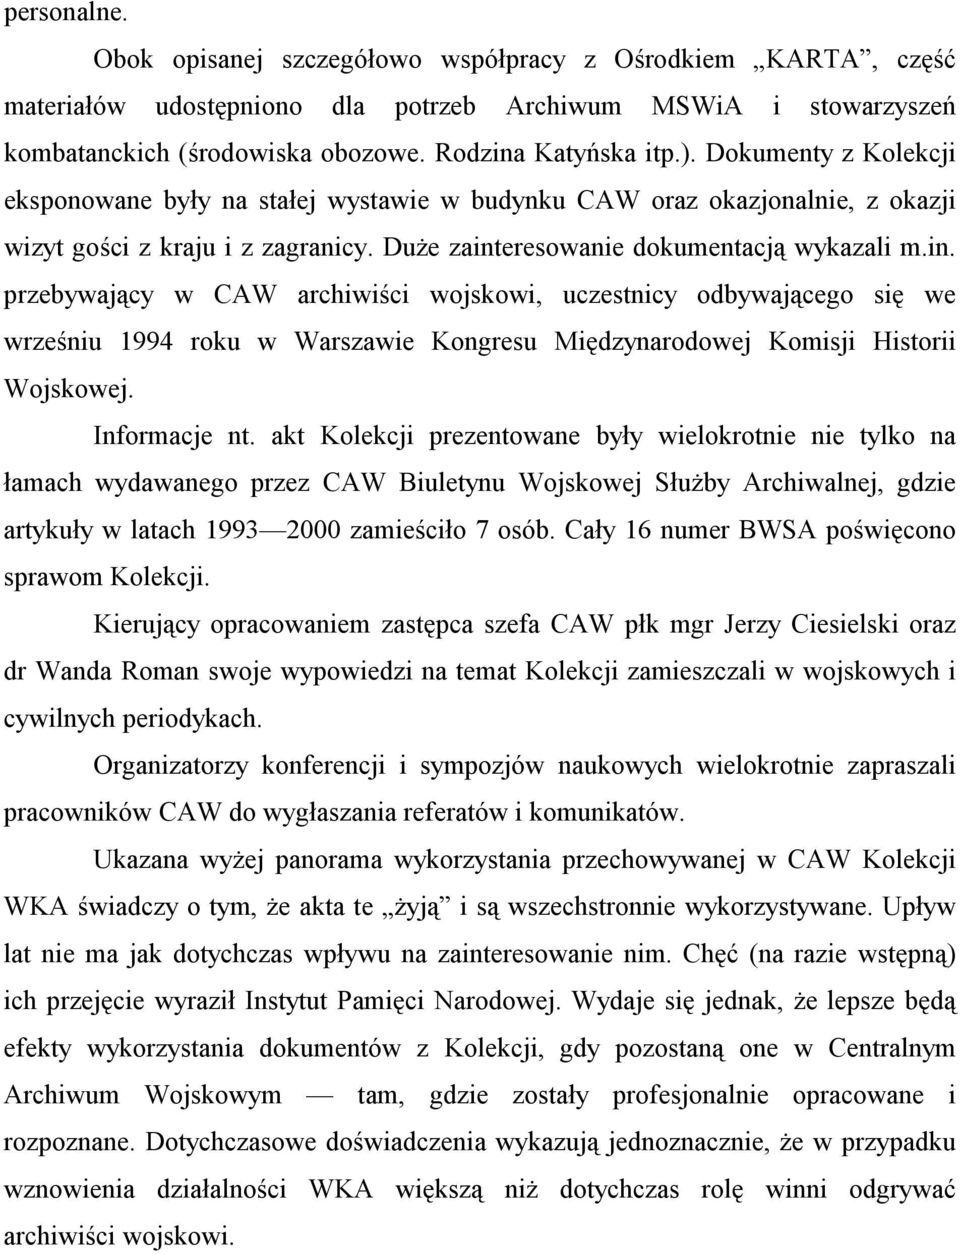 eresowanie dokumentacją wykazali m.in. przebywający w CAW archiwiści wojskowi, uczestnicy odbywającego się we wrześniu 1994 roku w Warszawie Kongresu Międzynarodowej Komisji Historii Wojskowej.